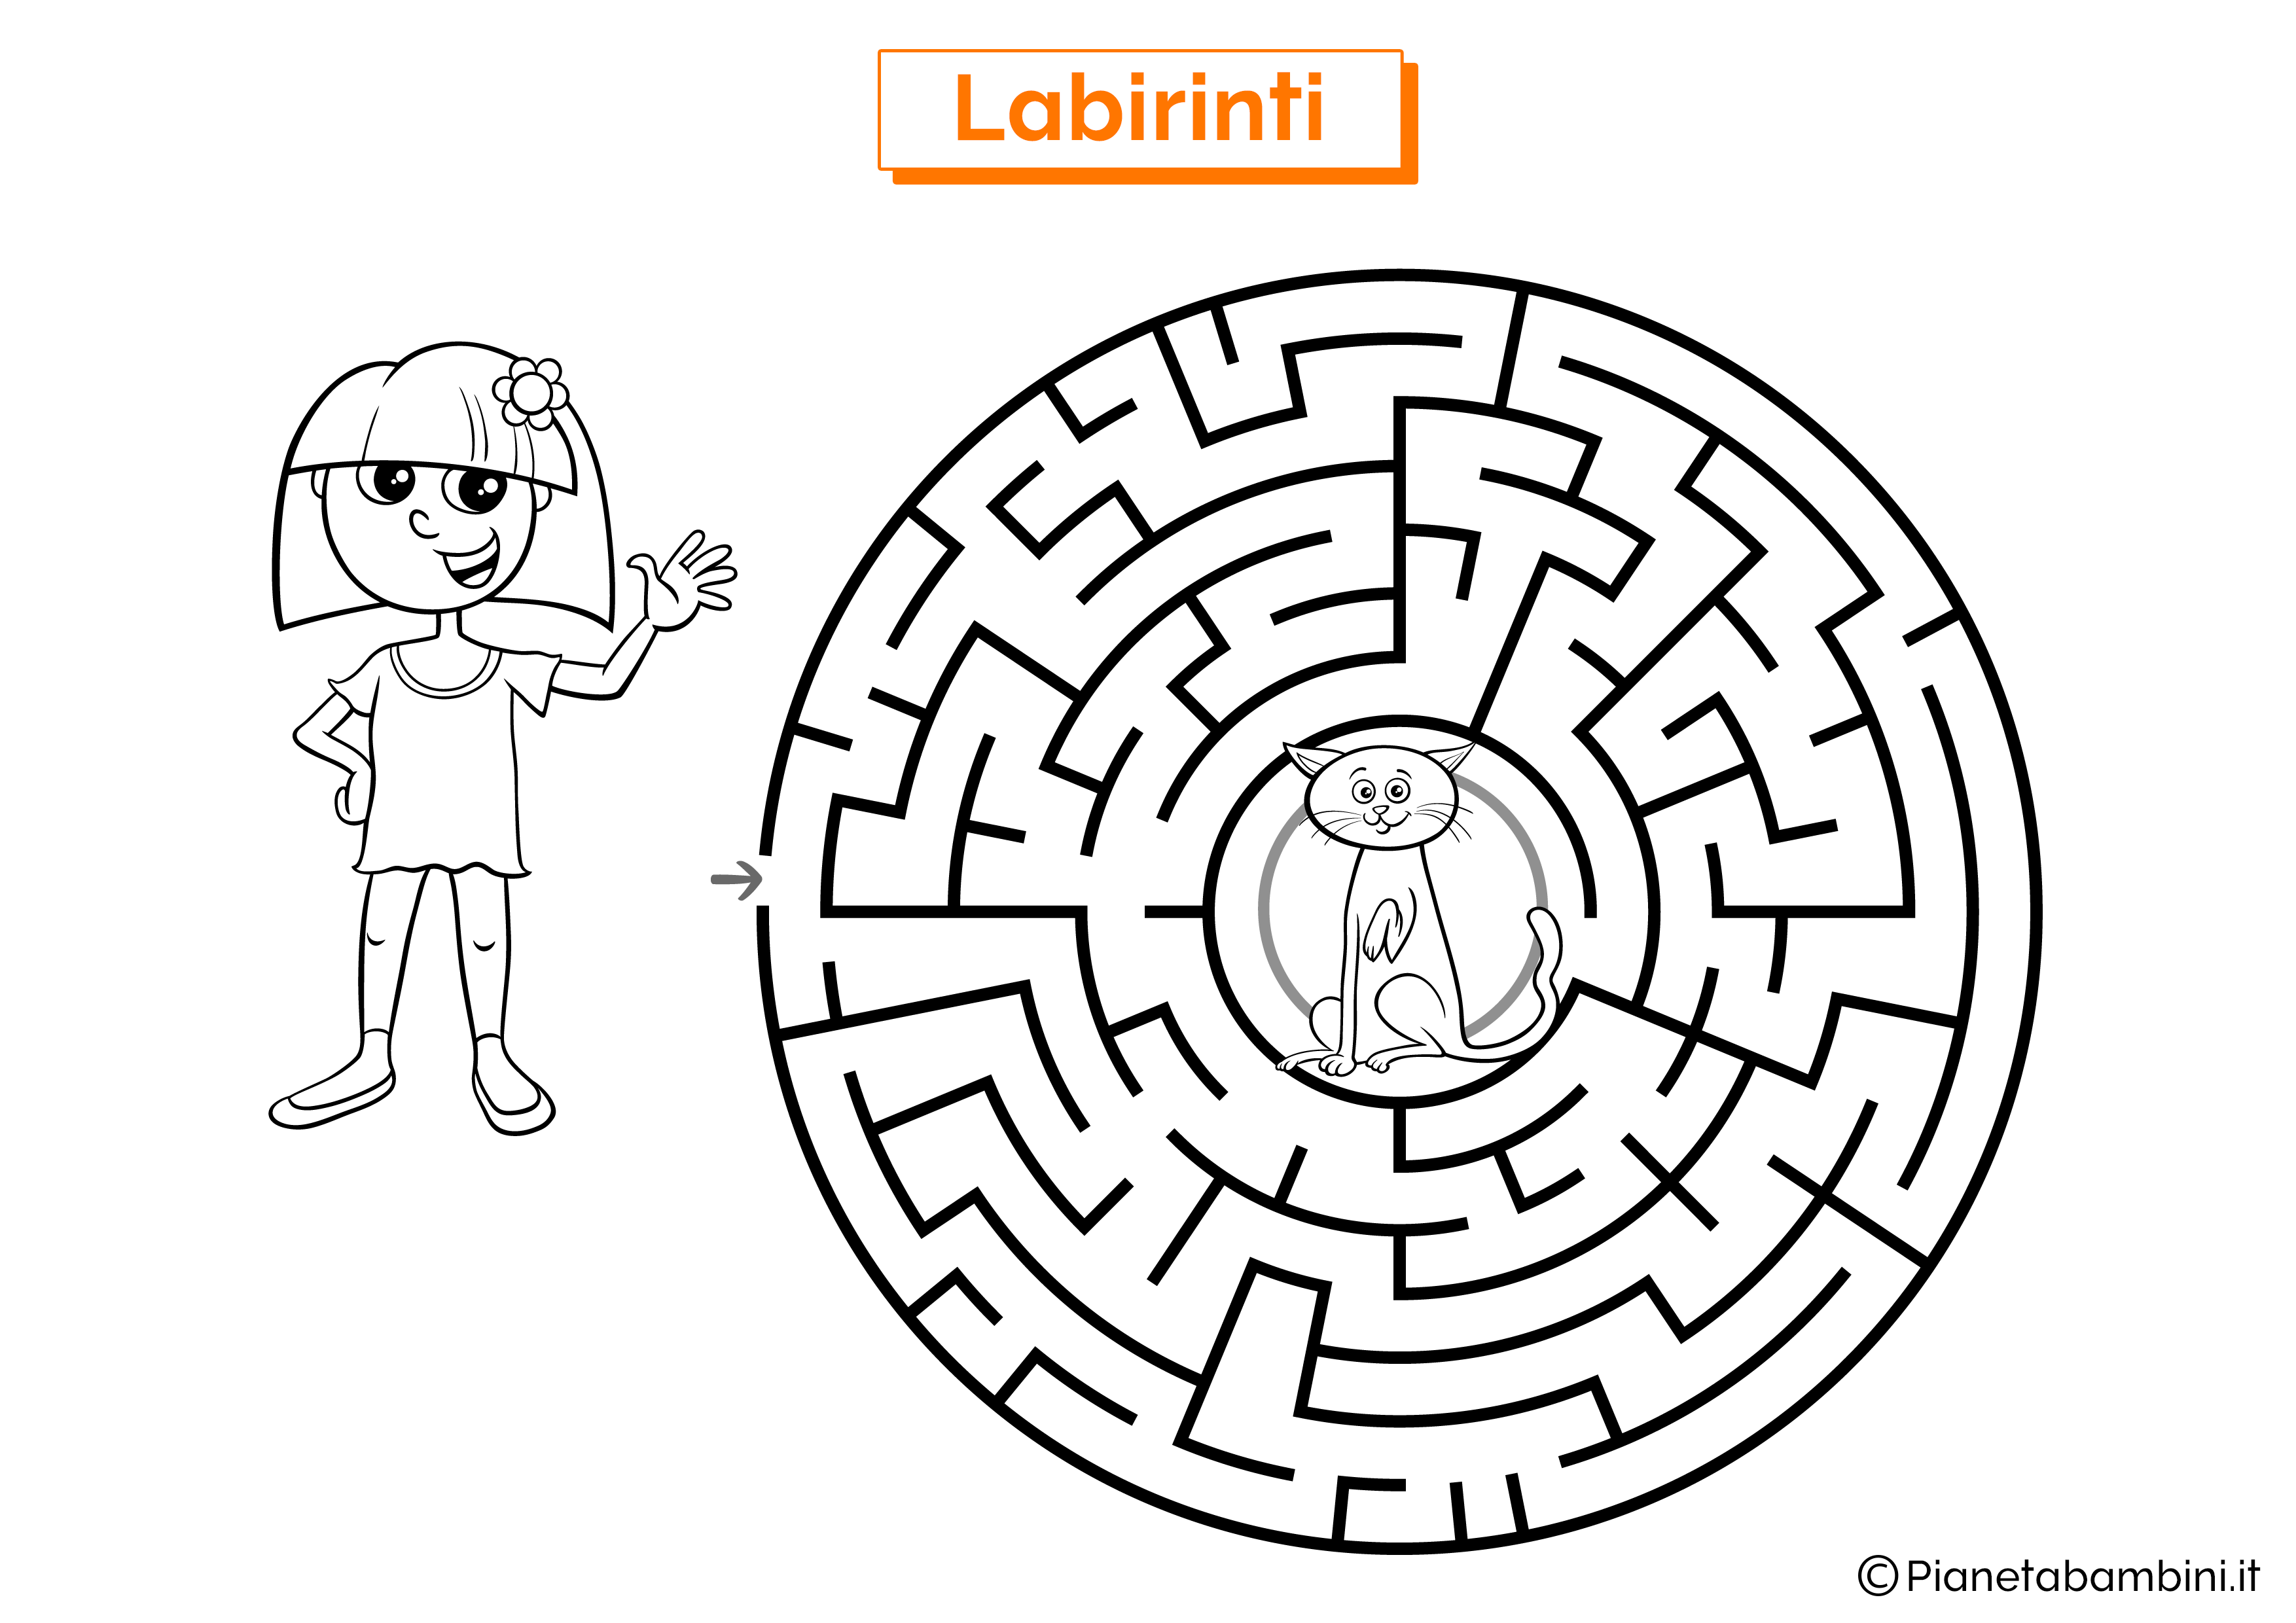 Labirinto con gatto e ragazza da stampare